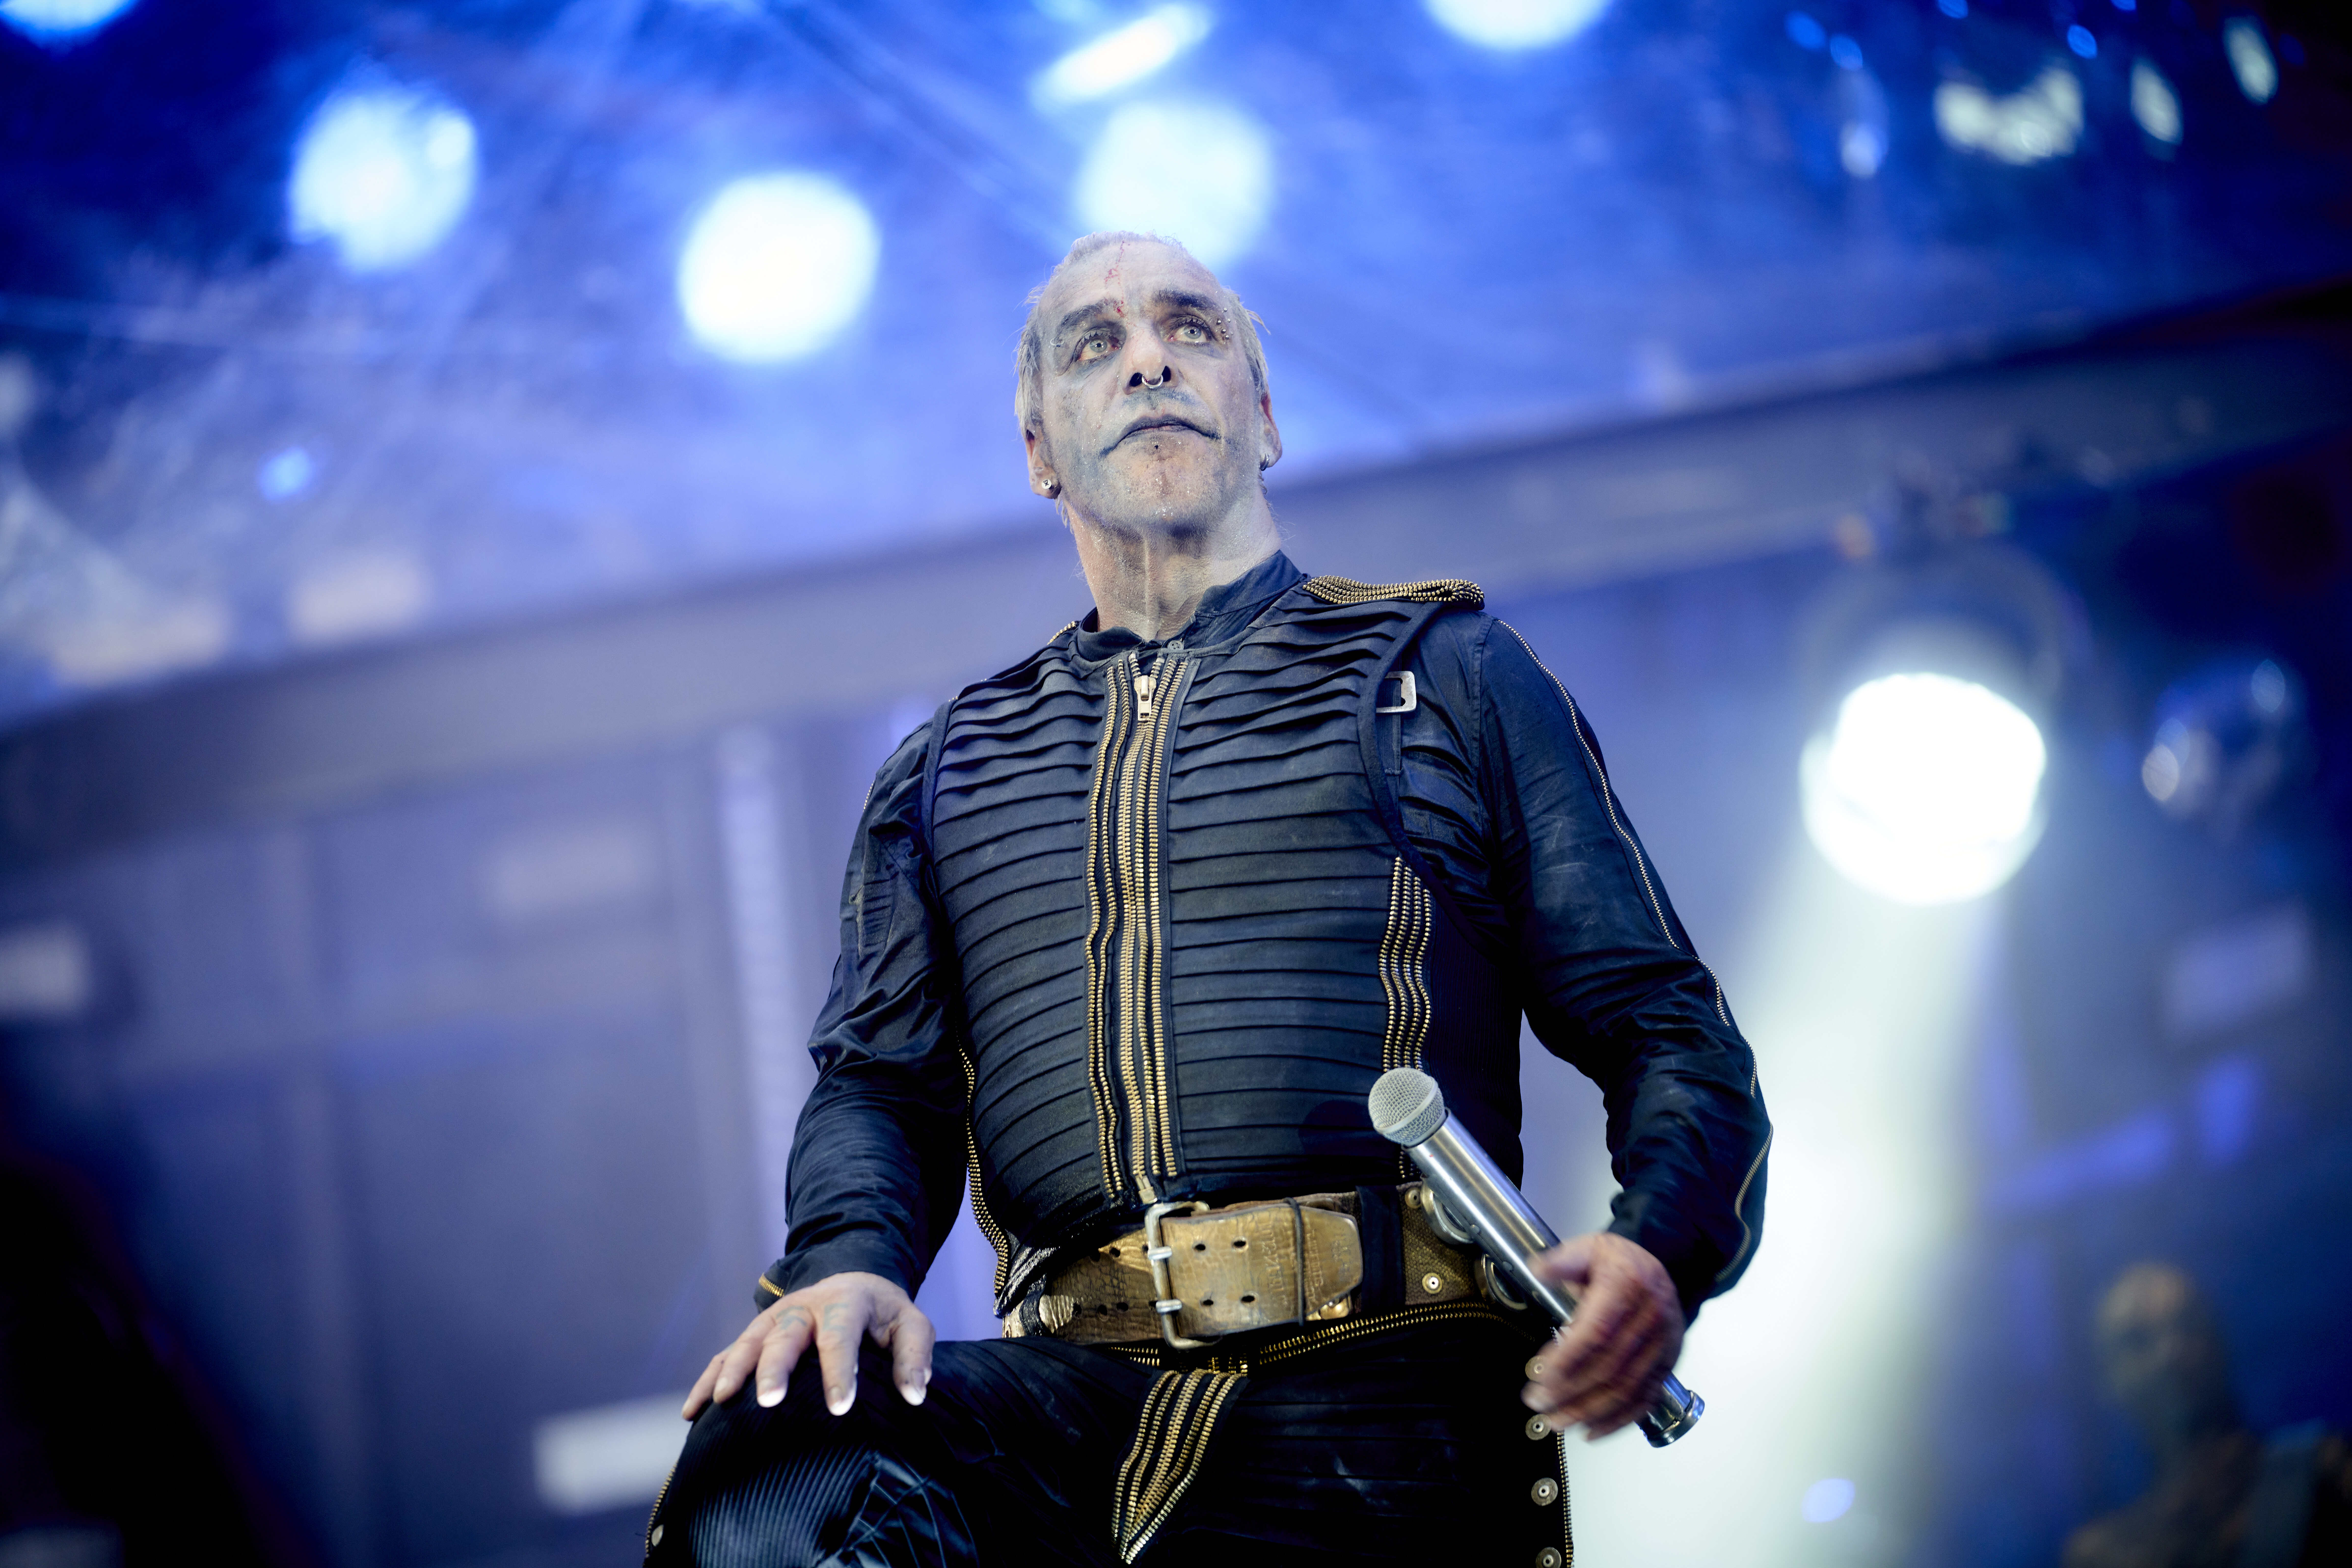 Till Lindemann, Sänger von Rammstein, wurde mit schweren Missbrauchsvorwürfen konfrontiert.